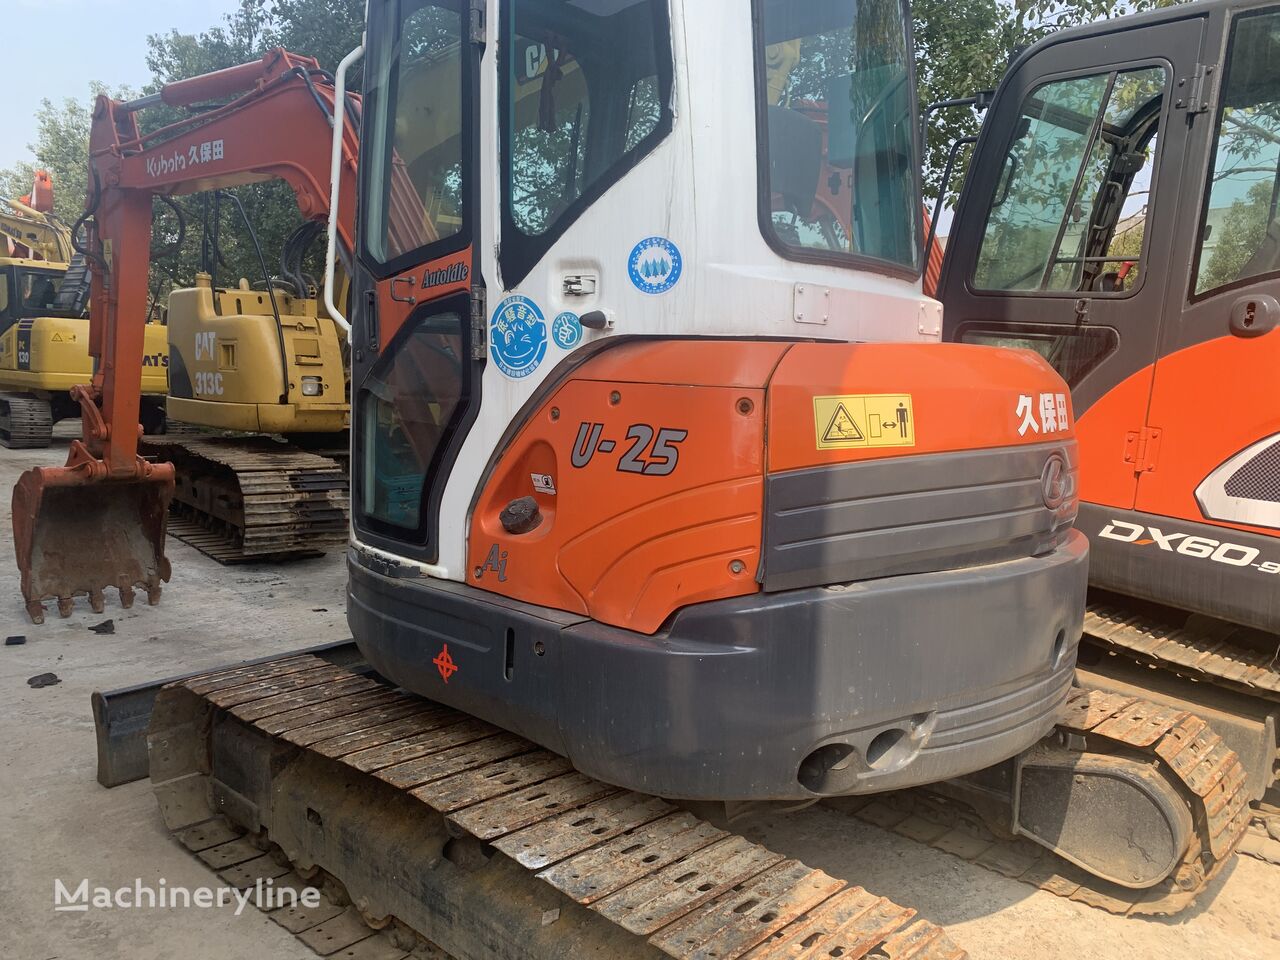 Kubota KX155-3 Tracked Excavator Used Constrction Machinery